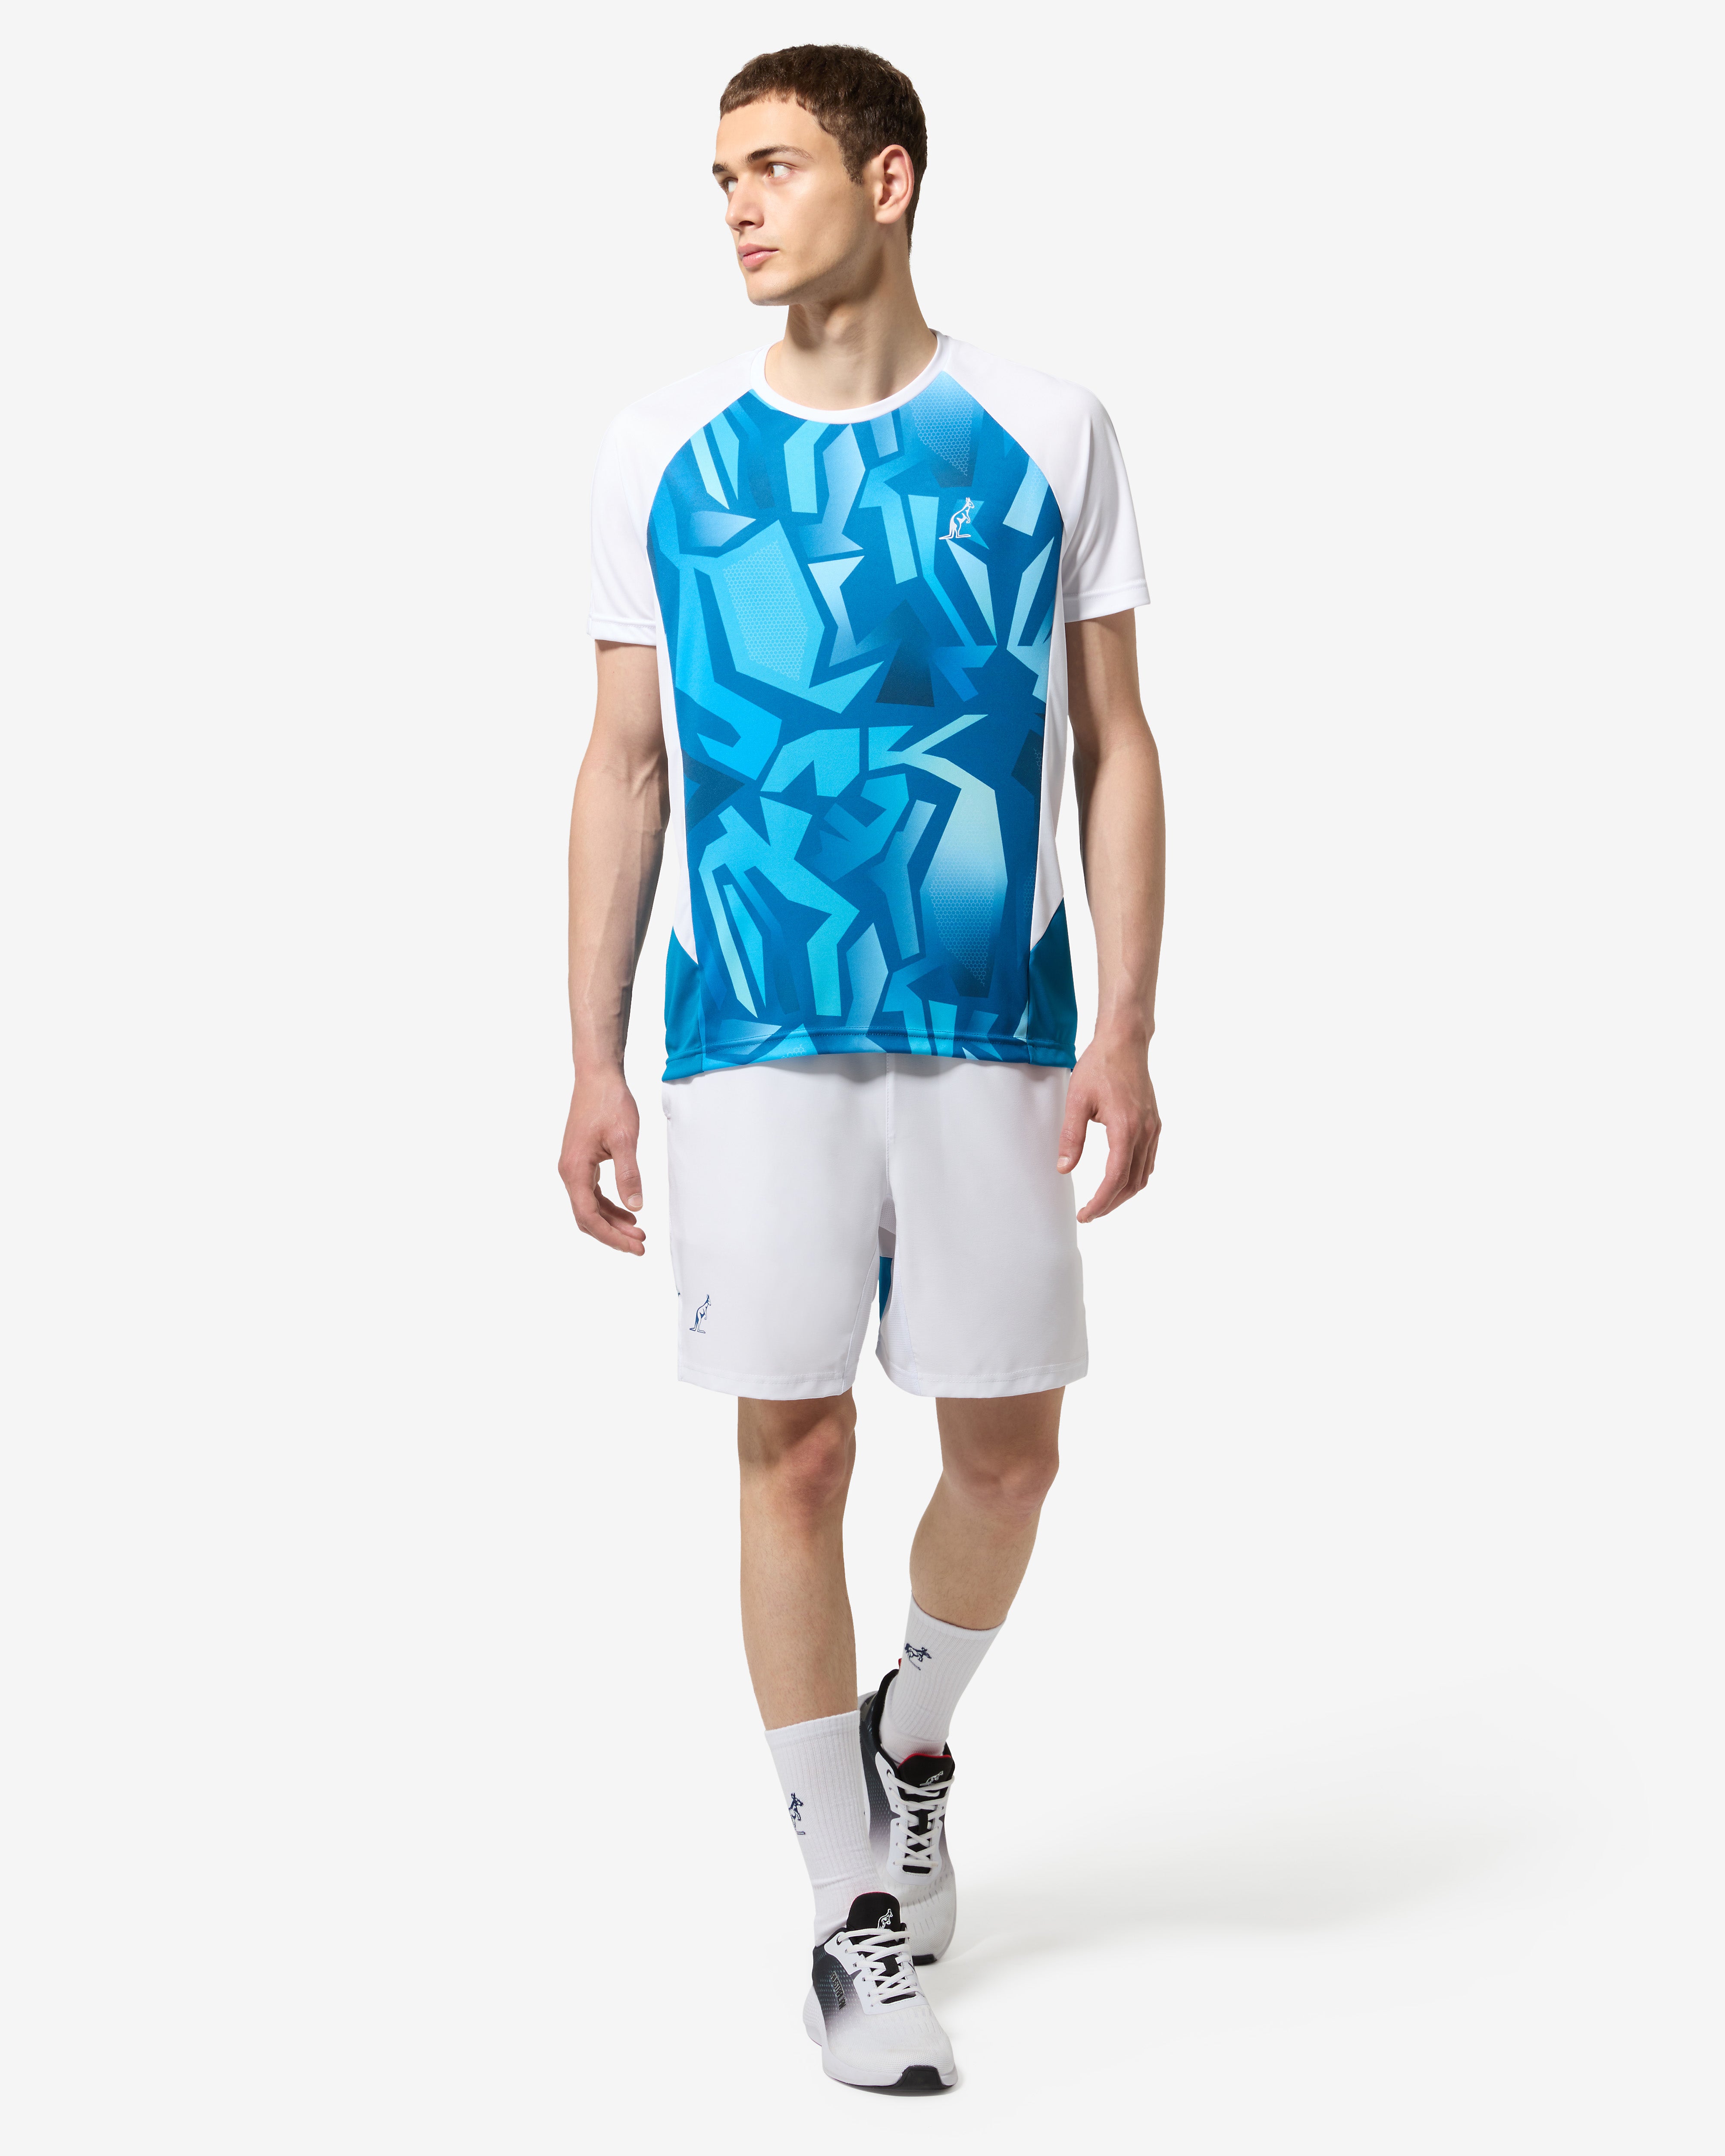 Abstract T-shirt: Australian Tennis